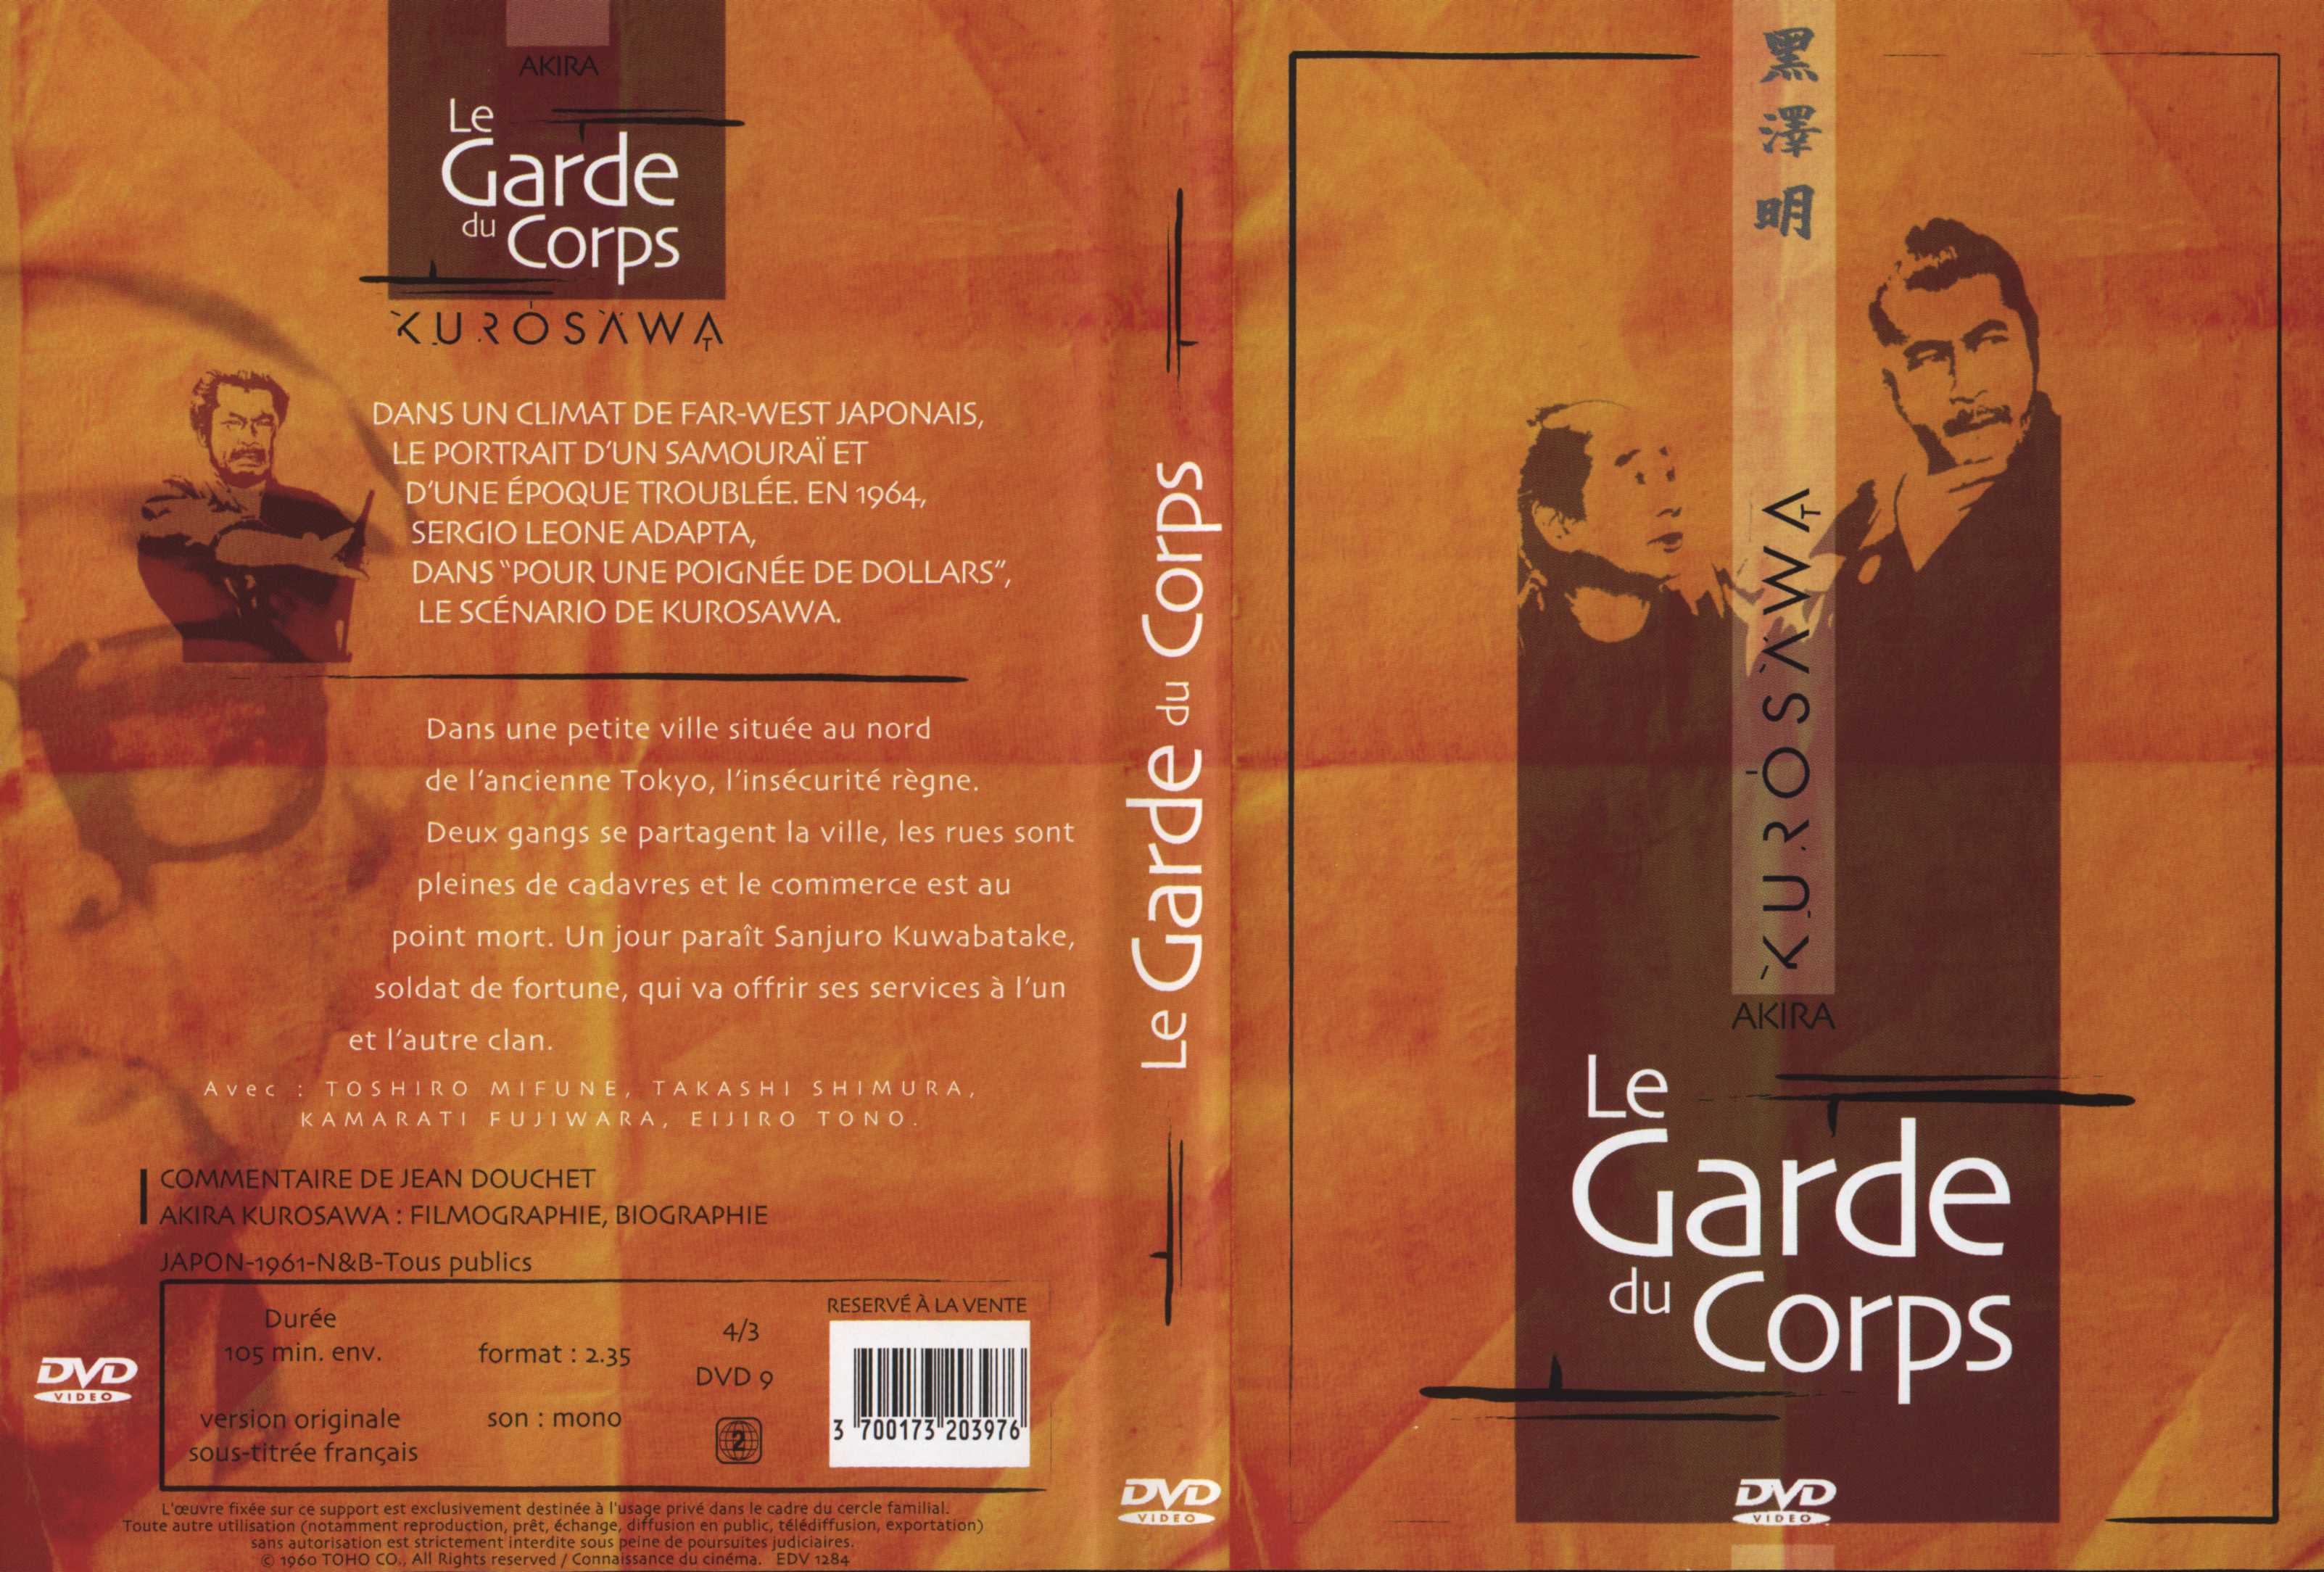 Jaquette DVD Le garde du corps v2